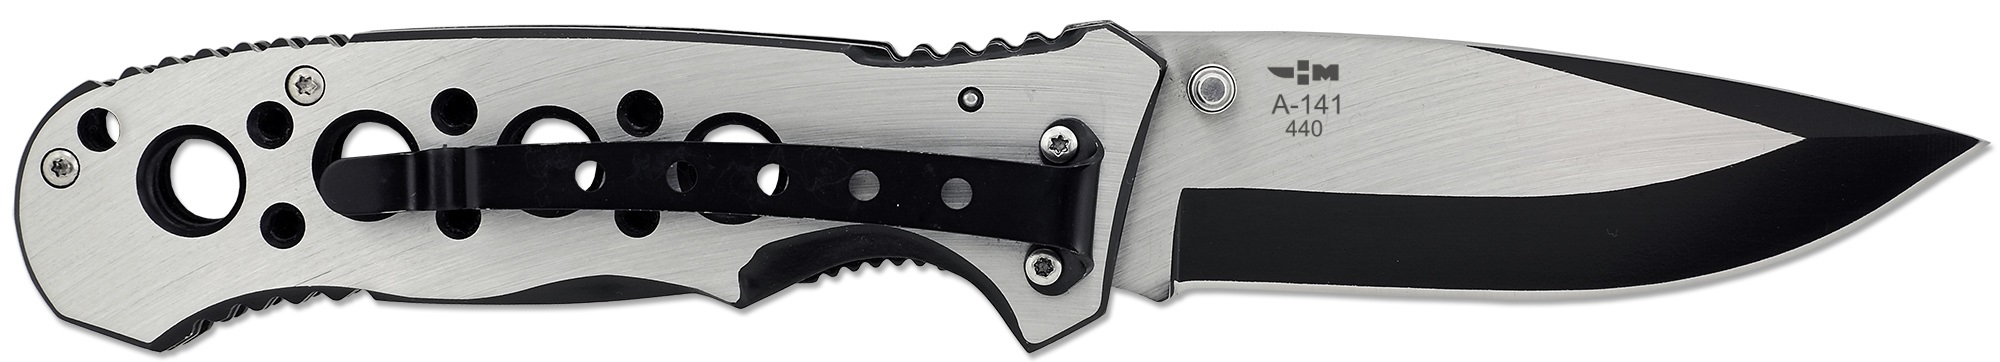 Нож складной с металлической рукоятью и клипсой Ножемир Чёткий расклад Achelous A-141